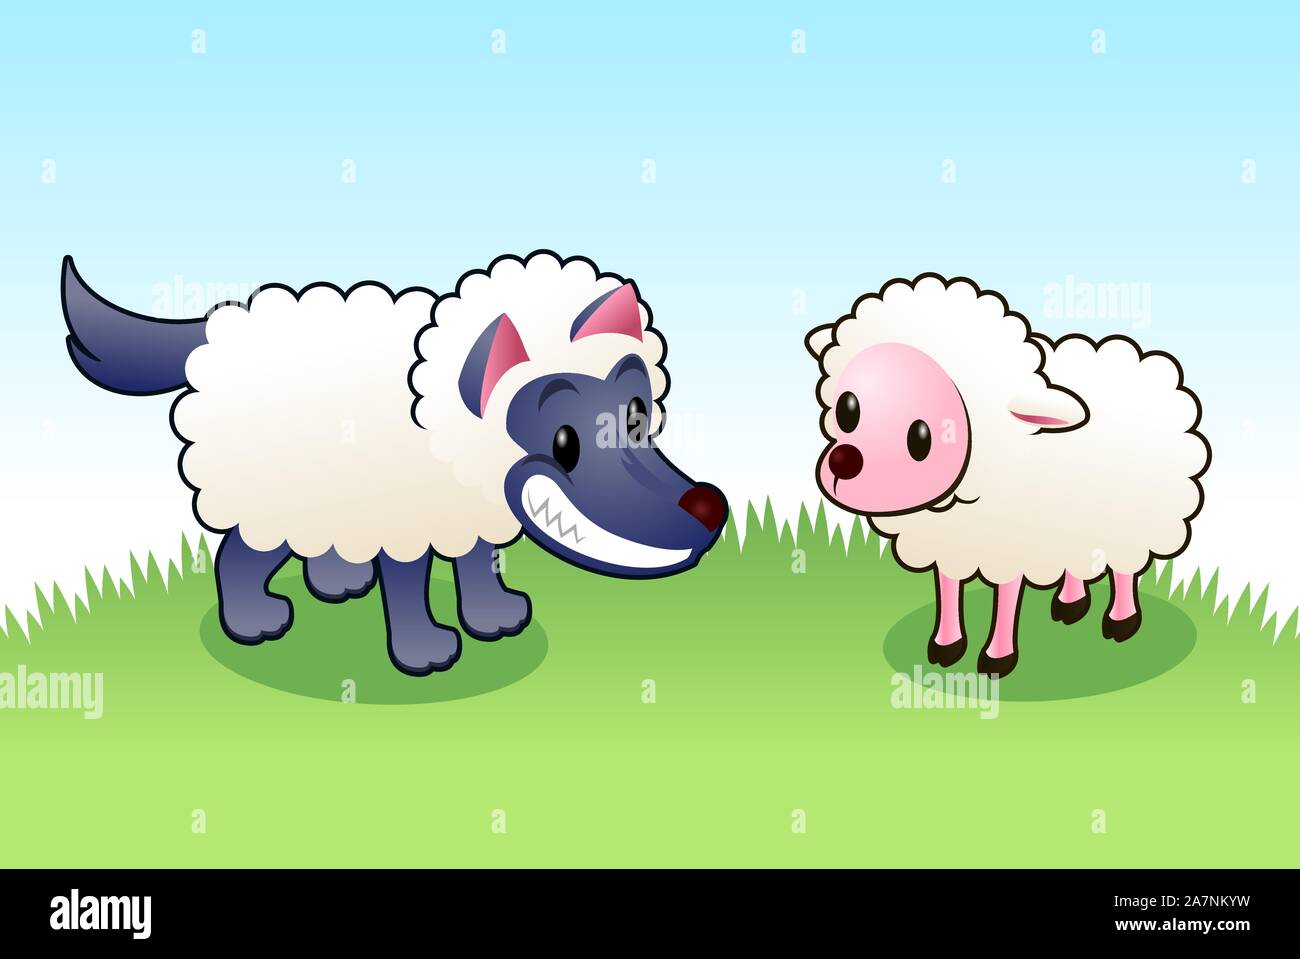 Wolf im Schafspelz Lächeln böse von unschuldigen Schafe, mit blauen Wolf und rosa Schafe, Rasen-Vektor-Illustration. Stock Vektor